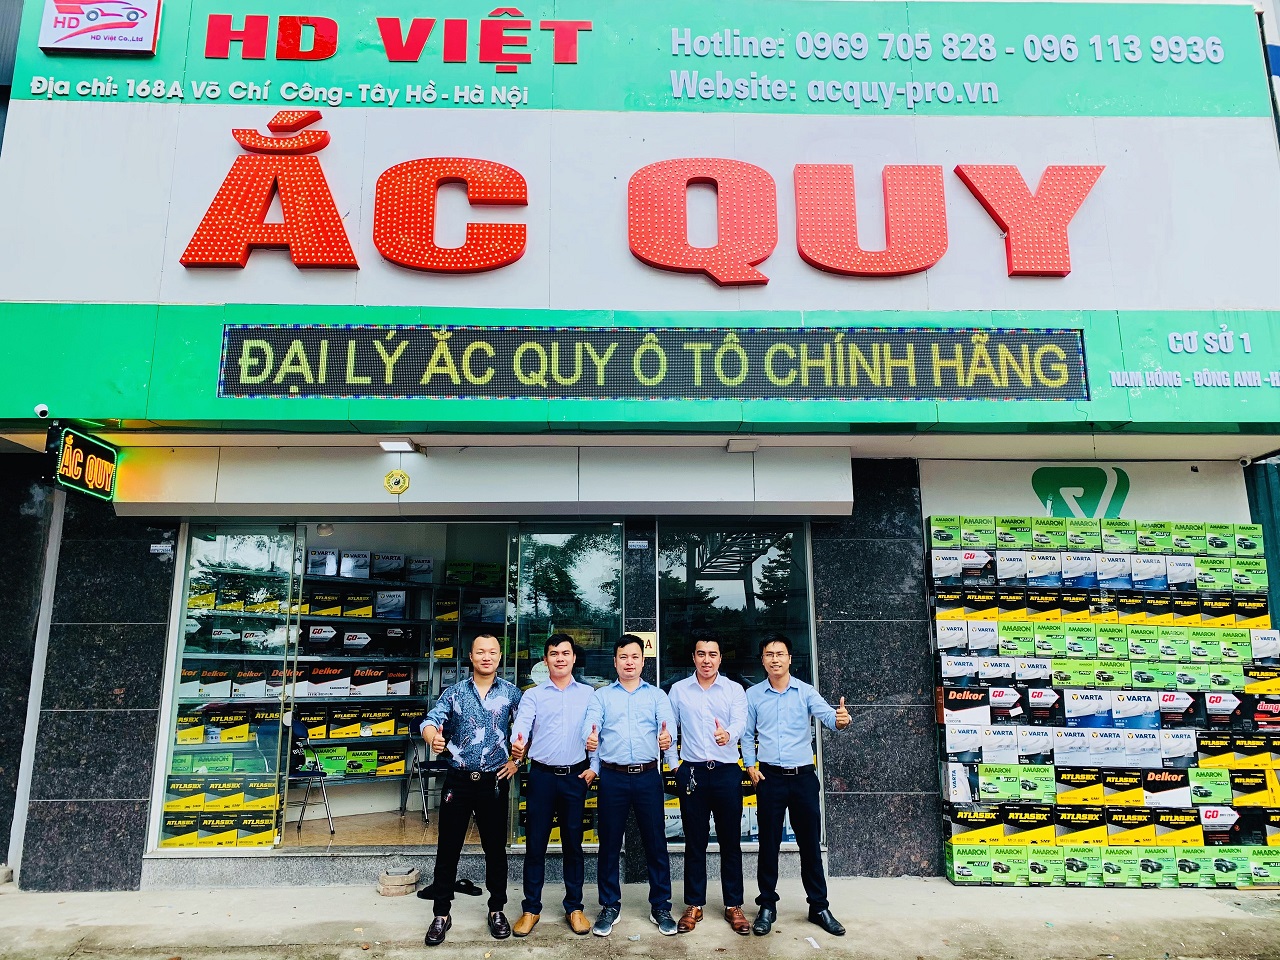 Ảnh 1 cơ sở của HD Việt